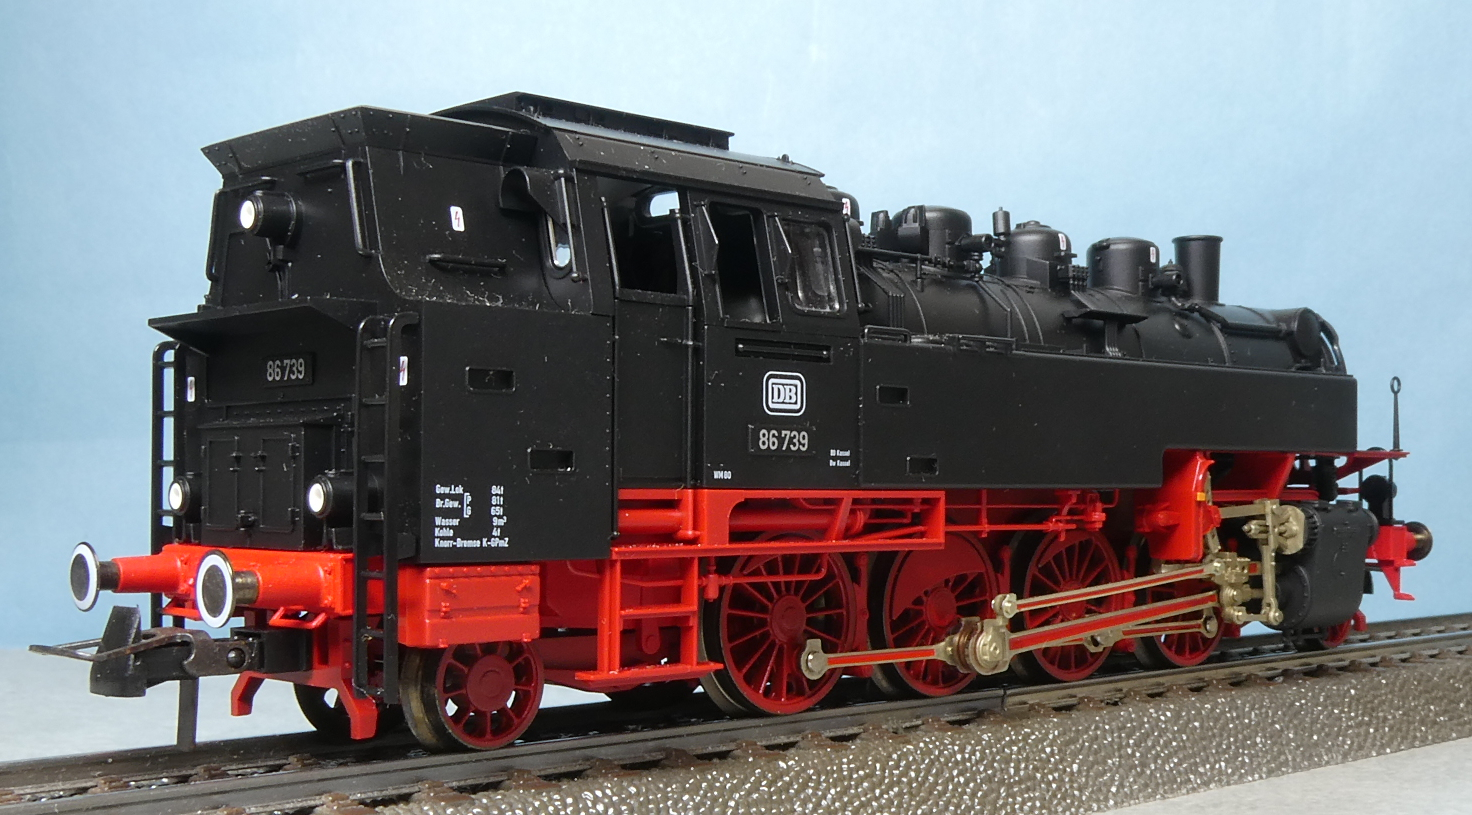 ドイツ連邦鉄道 DB 貨物用タンク式蒸気機関車 BR 86 739号機 ...